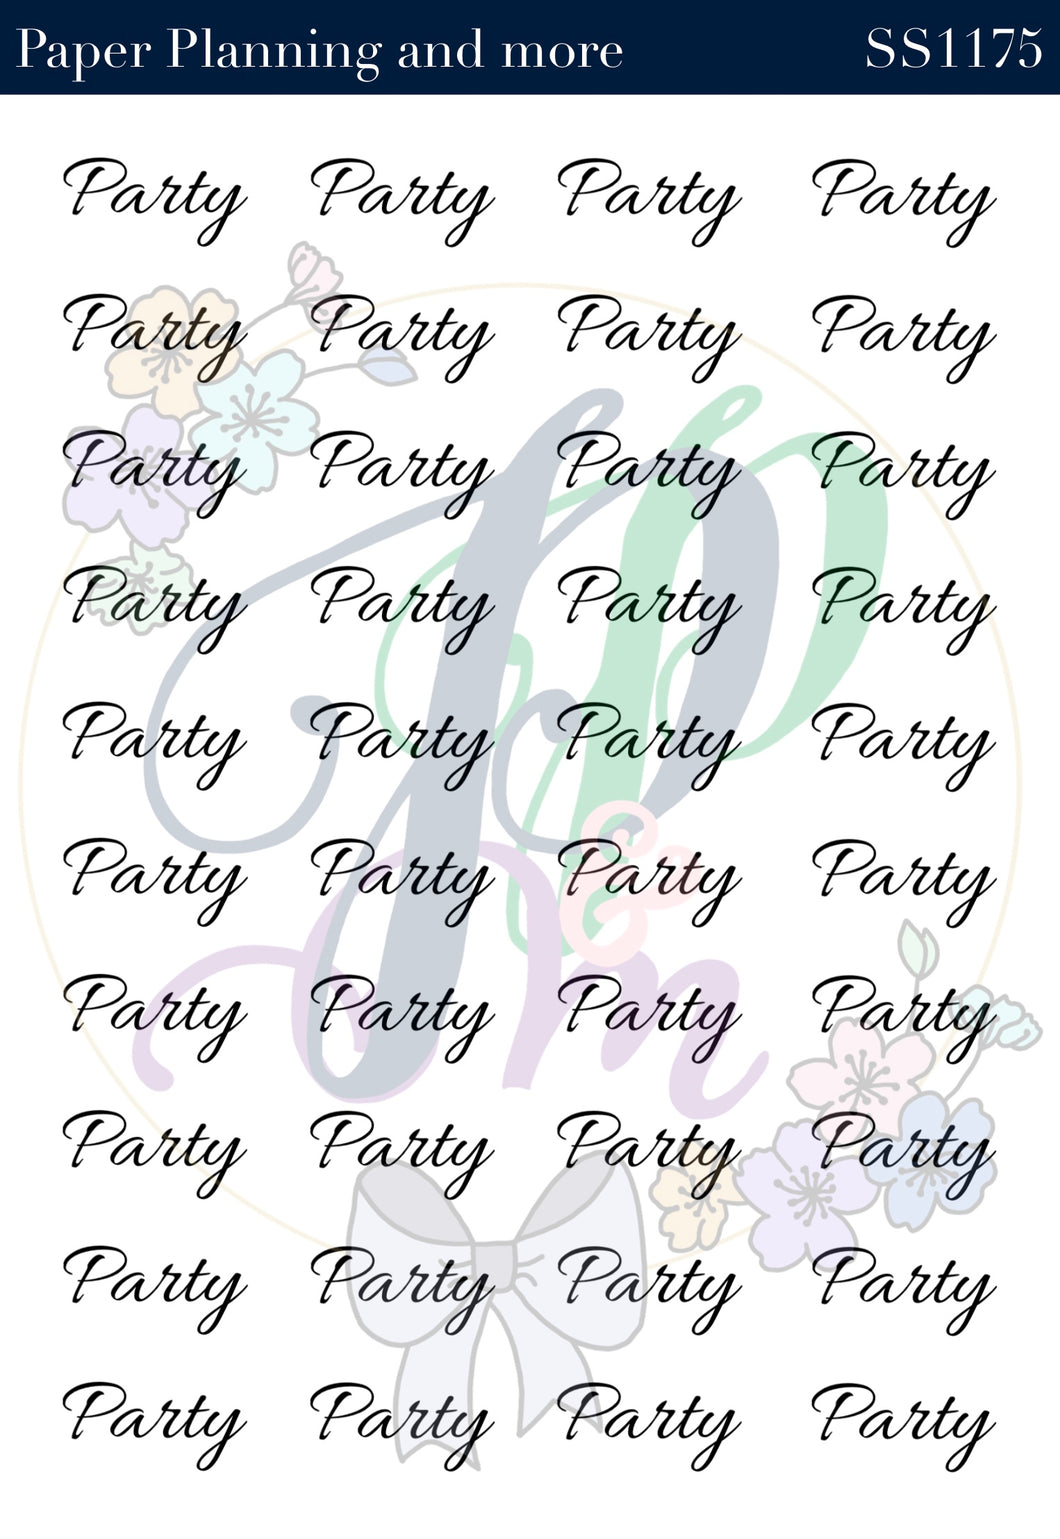 Party Handwritten Sticker Sheet